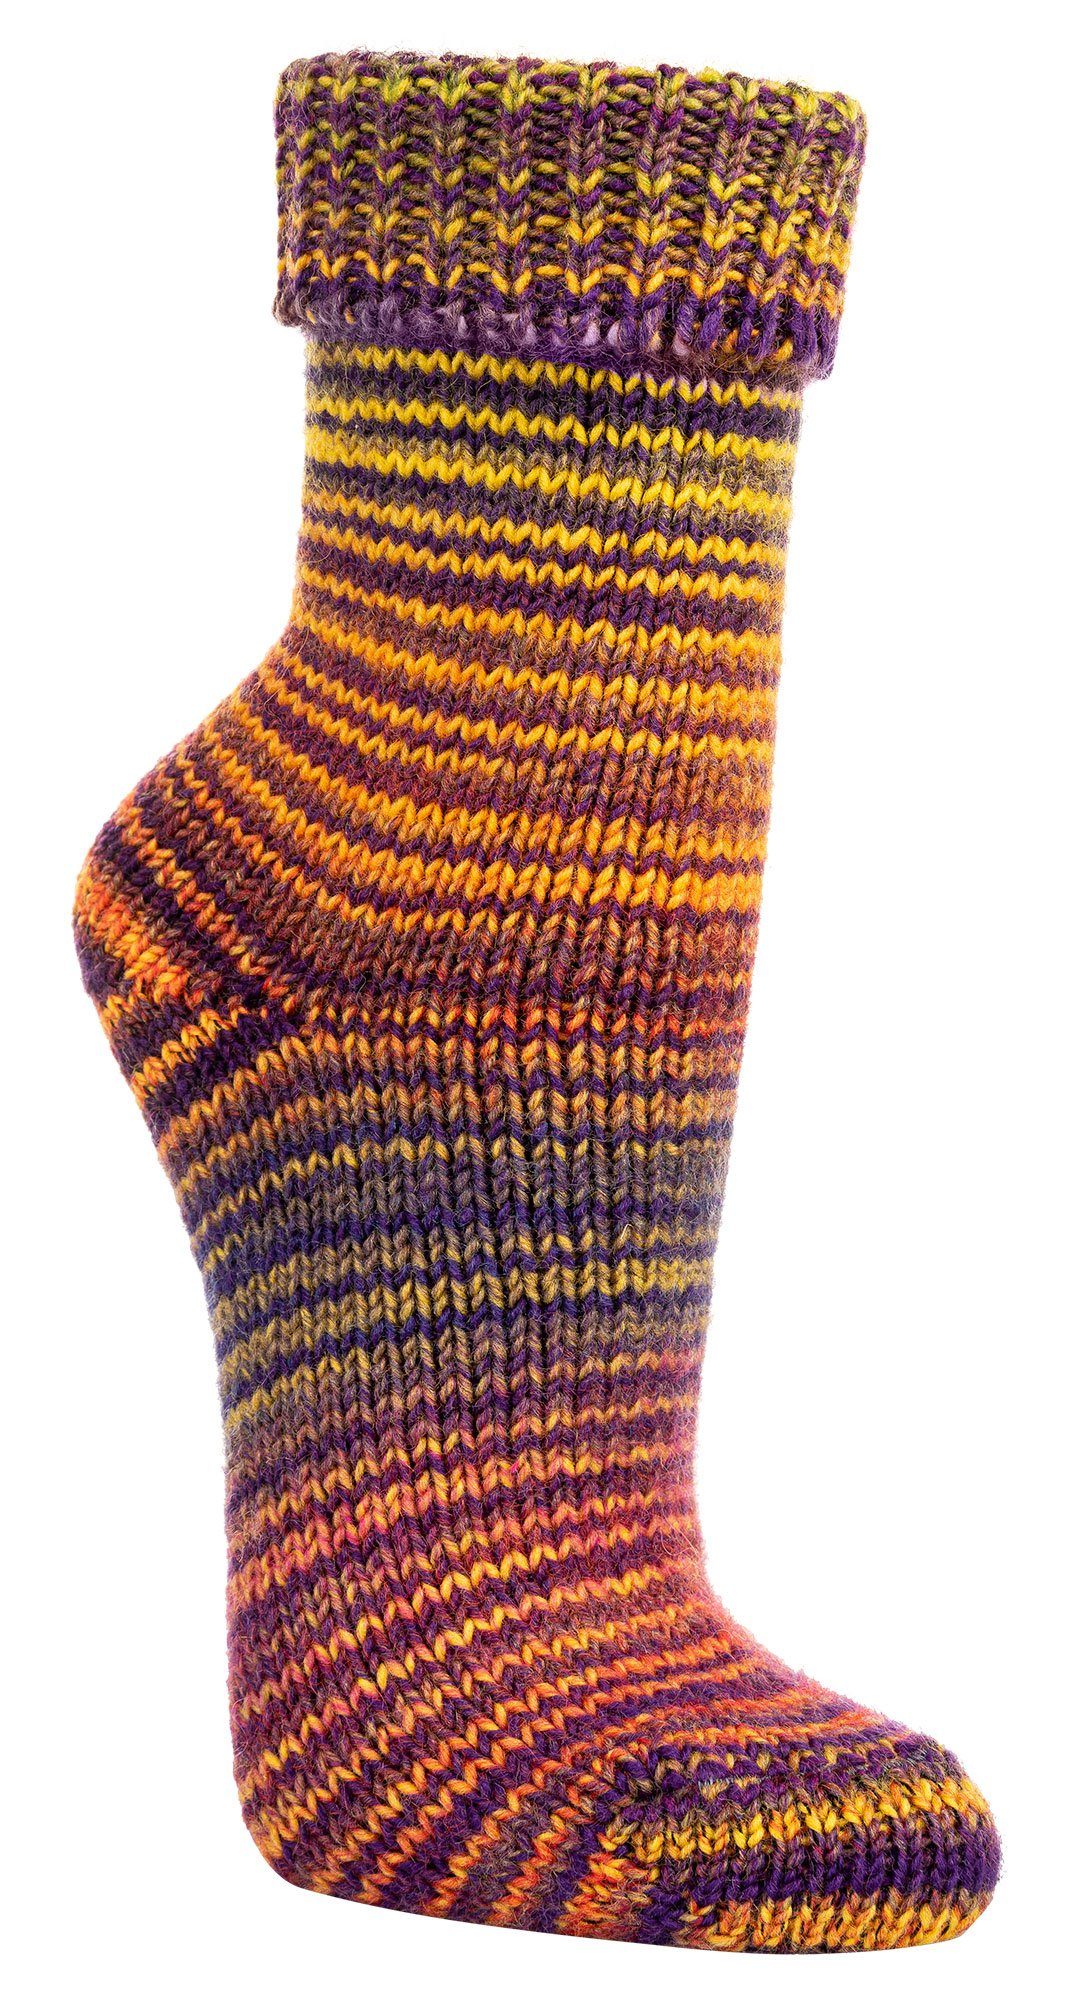 TippTexx 24 Umschlagsocken 2 Paar kuschelige Socken Wollsocken im Skandinavien-Style mit Umschlag Gelb-Lila